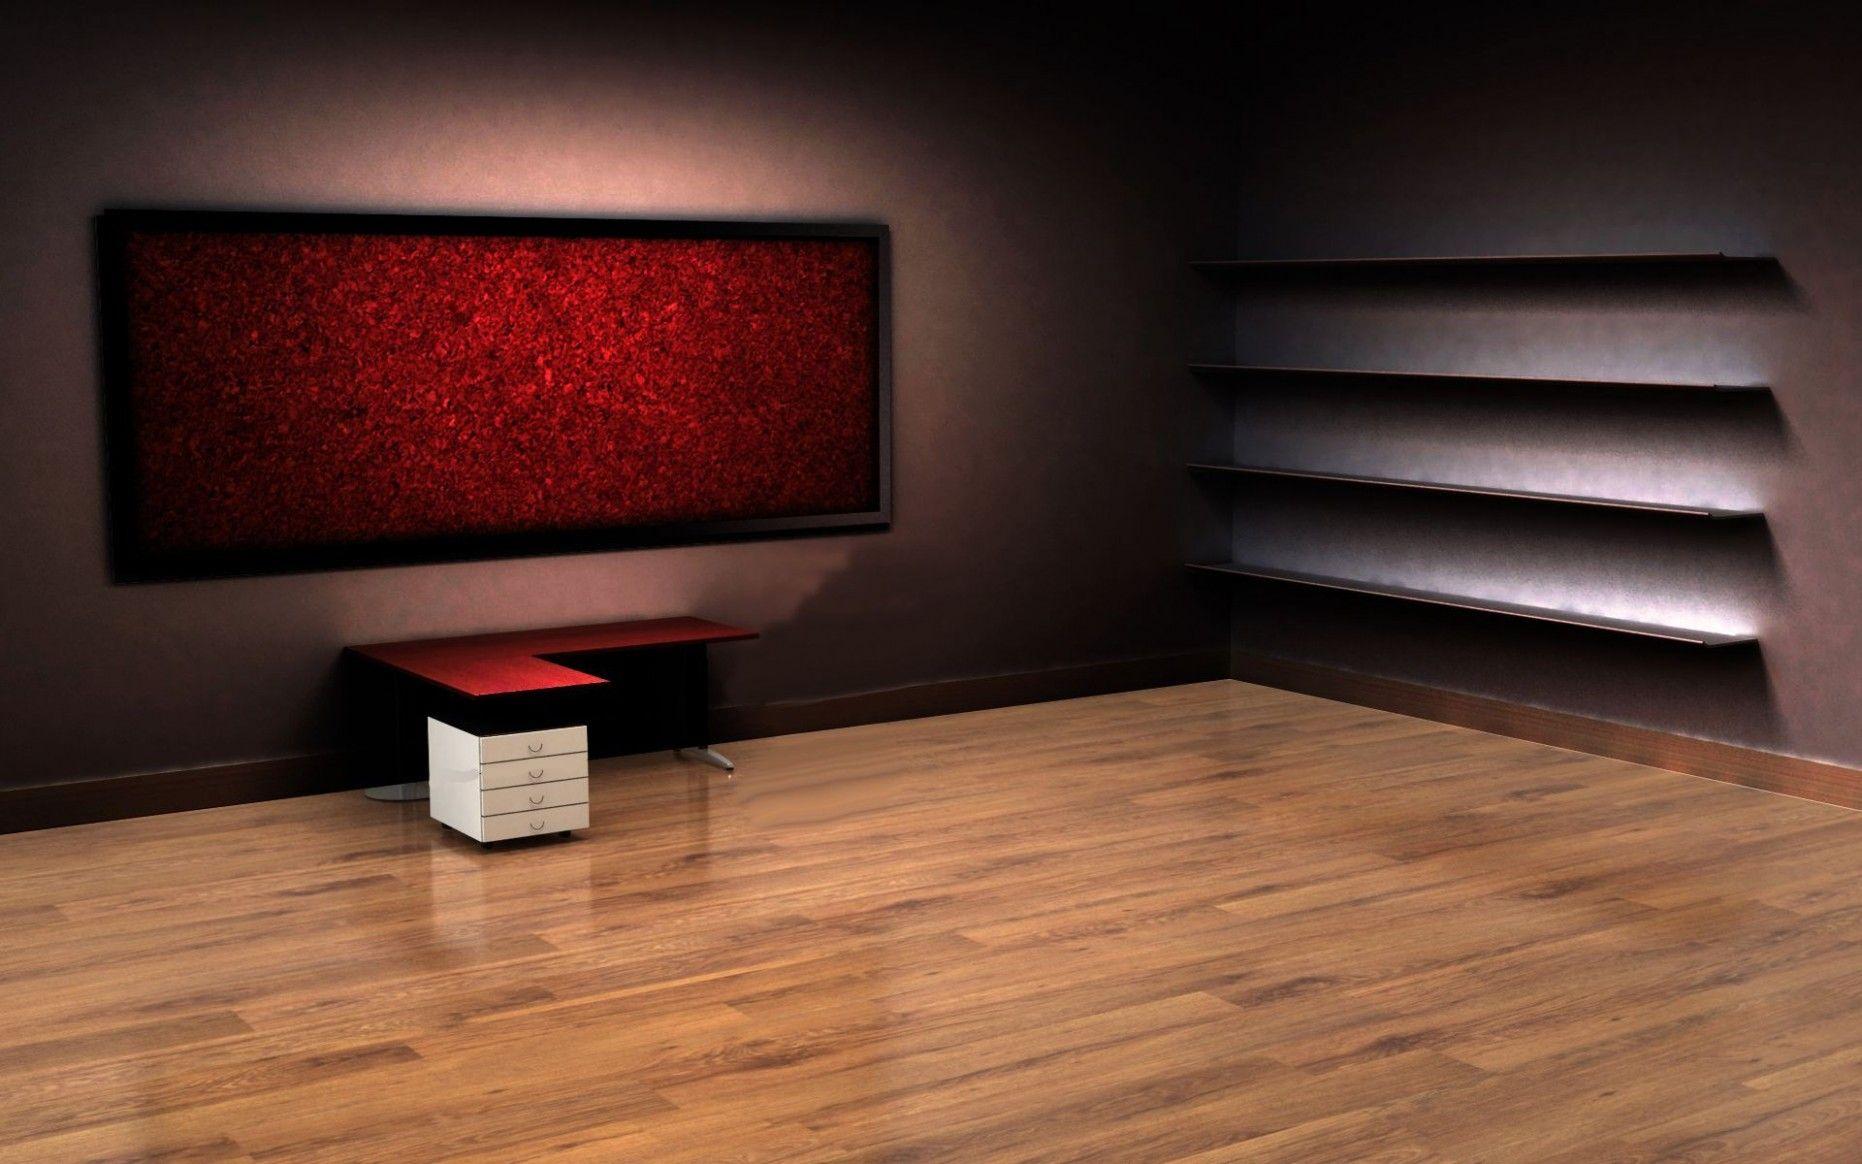 Hình nền  đen trừu tượng 3D Đỏ nữa đêm Bị gãy ánh sáng Thiết kế  bóng tối căn phòng tối 2560x1080 px Hình nền máy tính product design  2560x1080  CoolWallpapers 